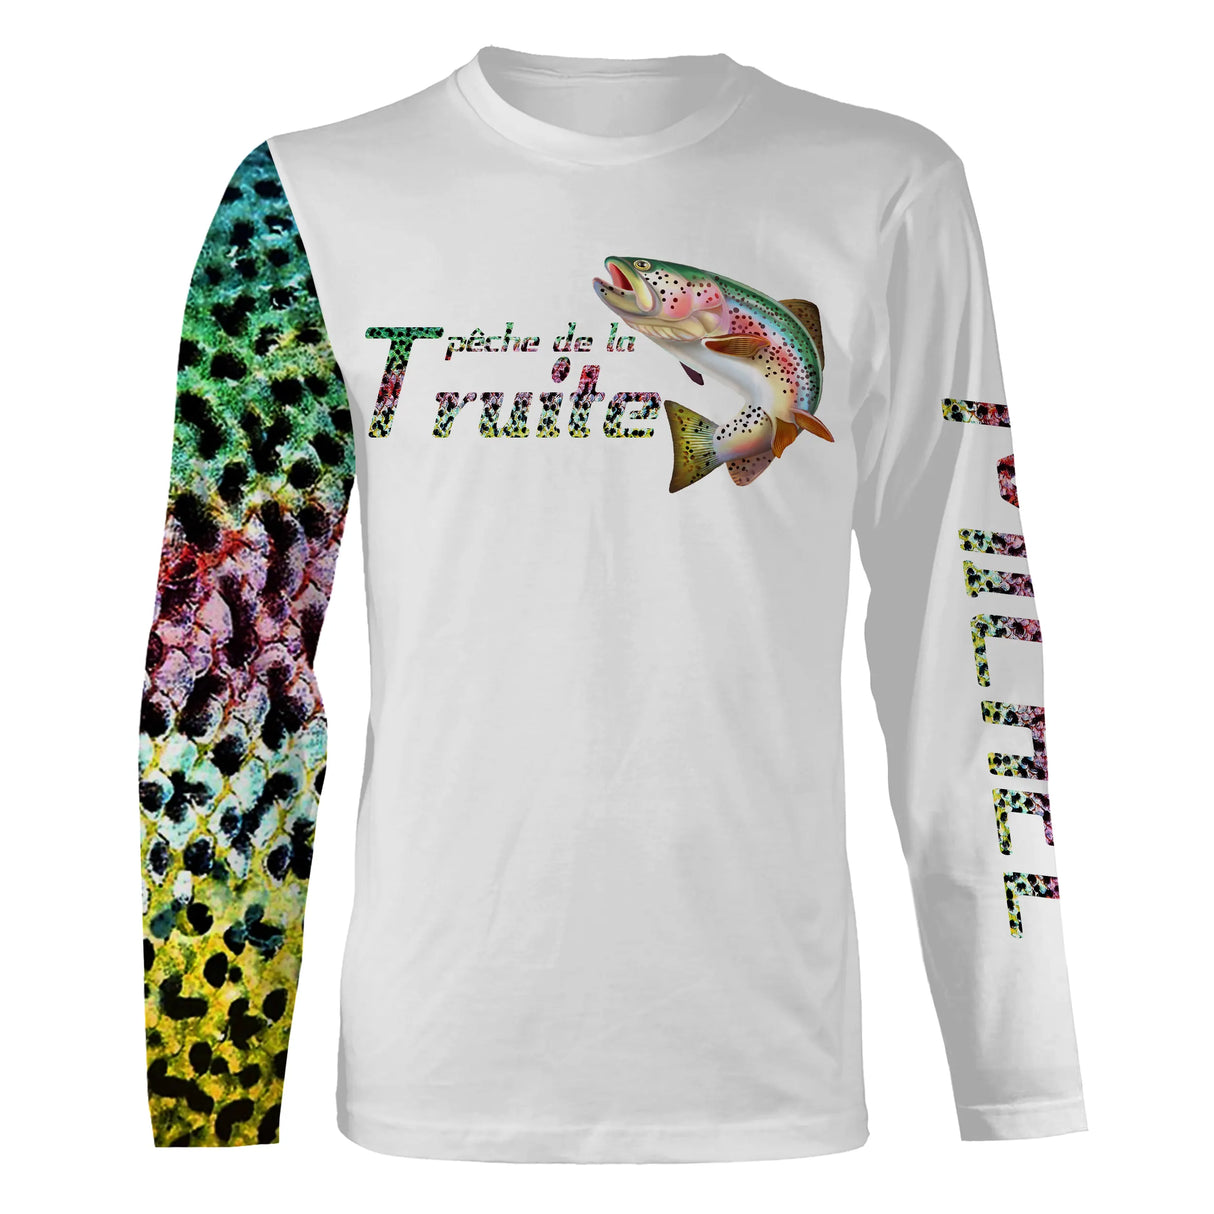 T-shirt da pesca anti-UV personalizzata, motivo pelle di trota, miglior regalo per pescatori - CT03082229